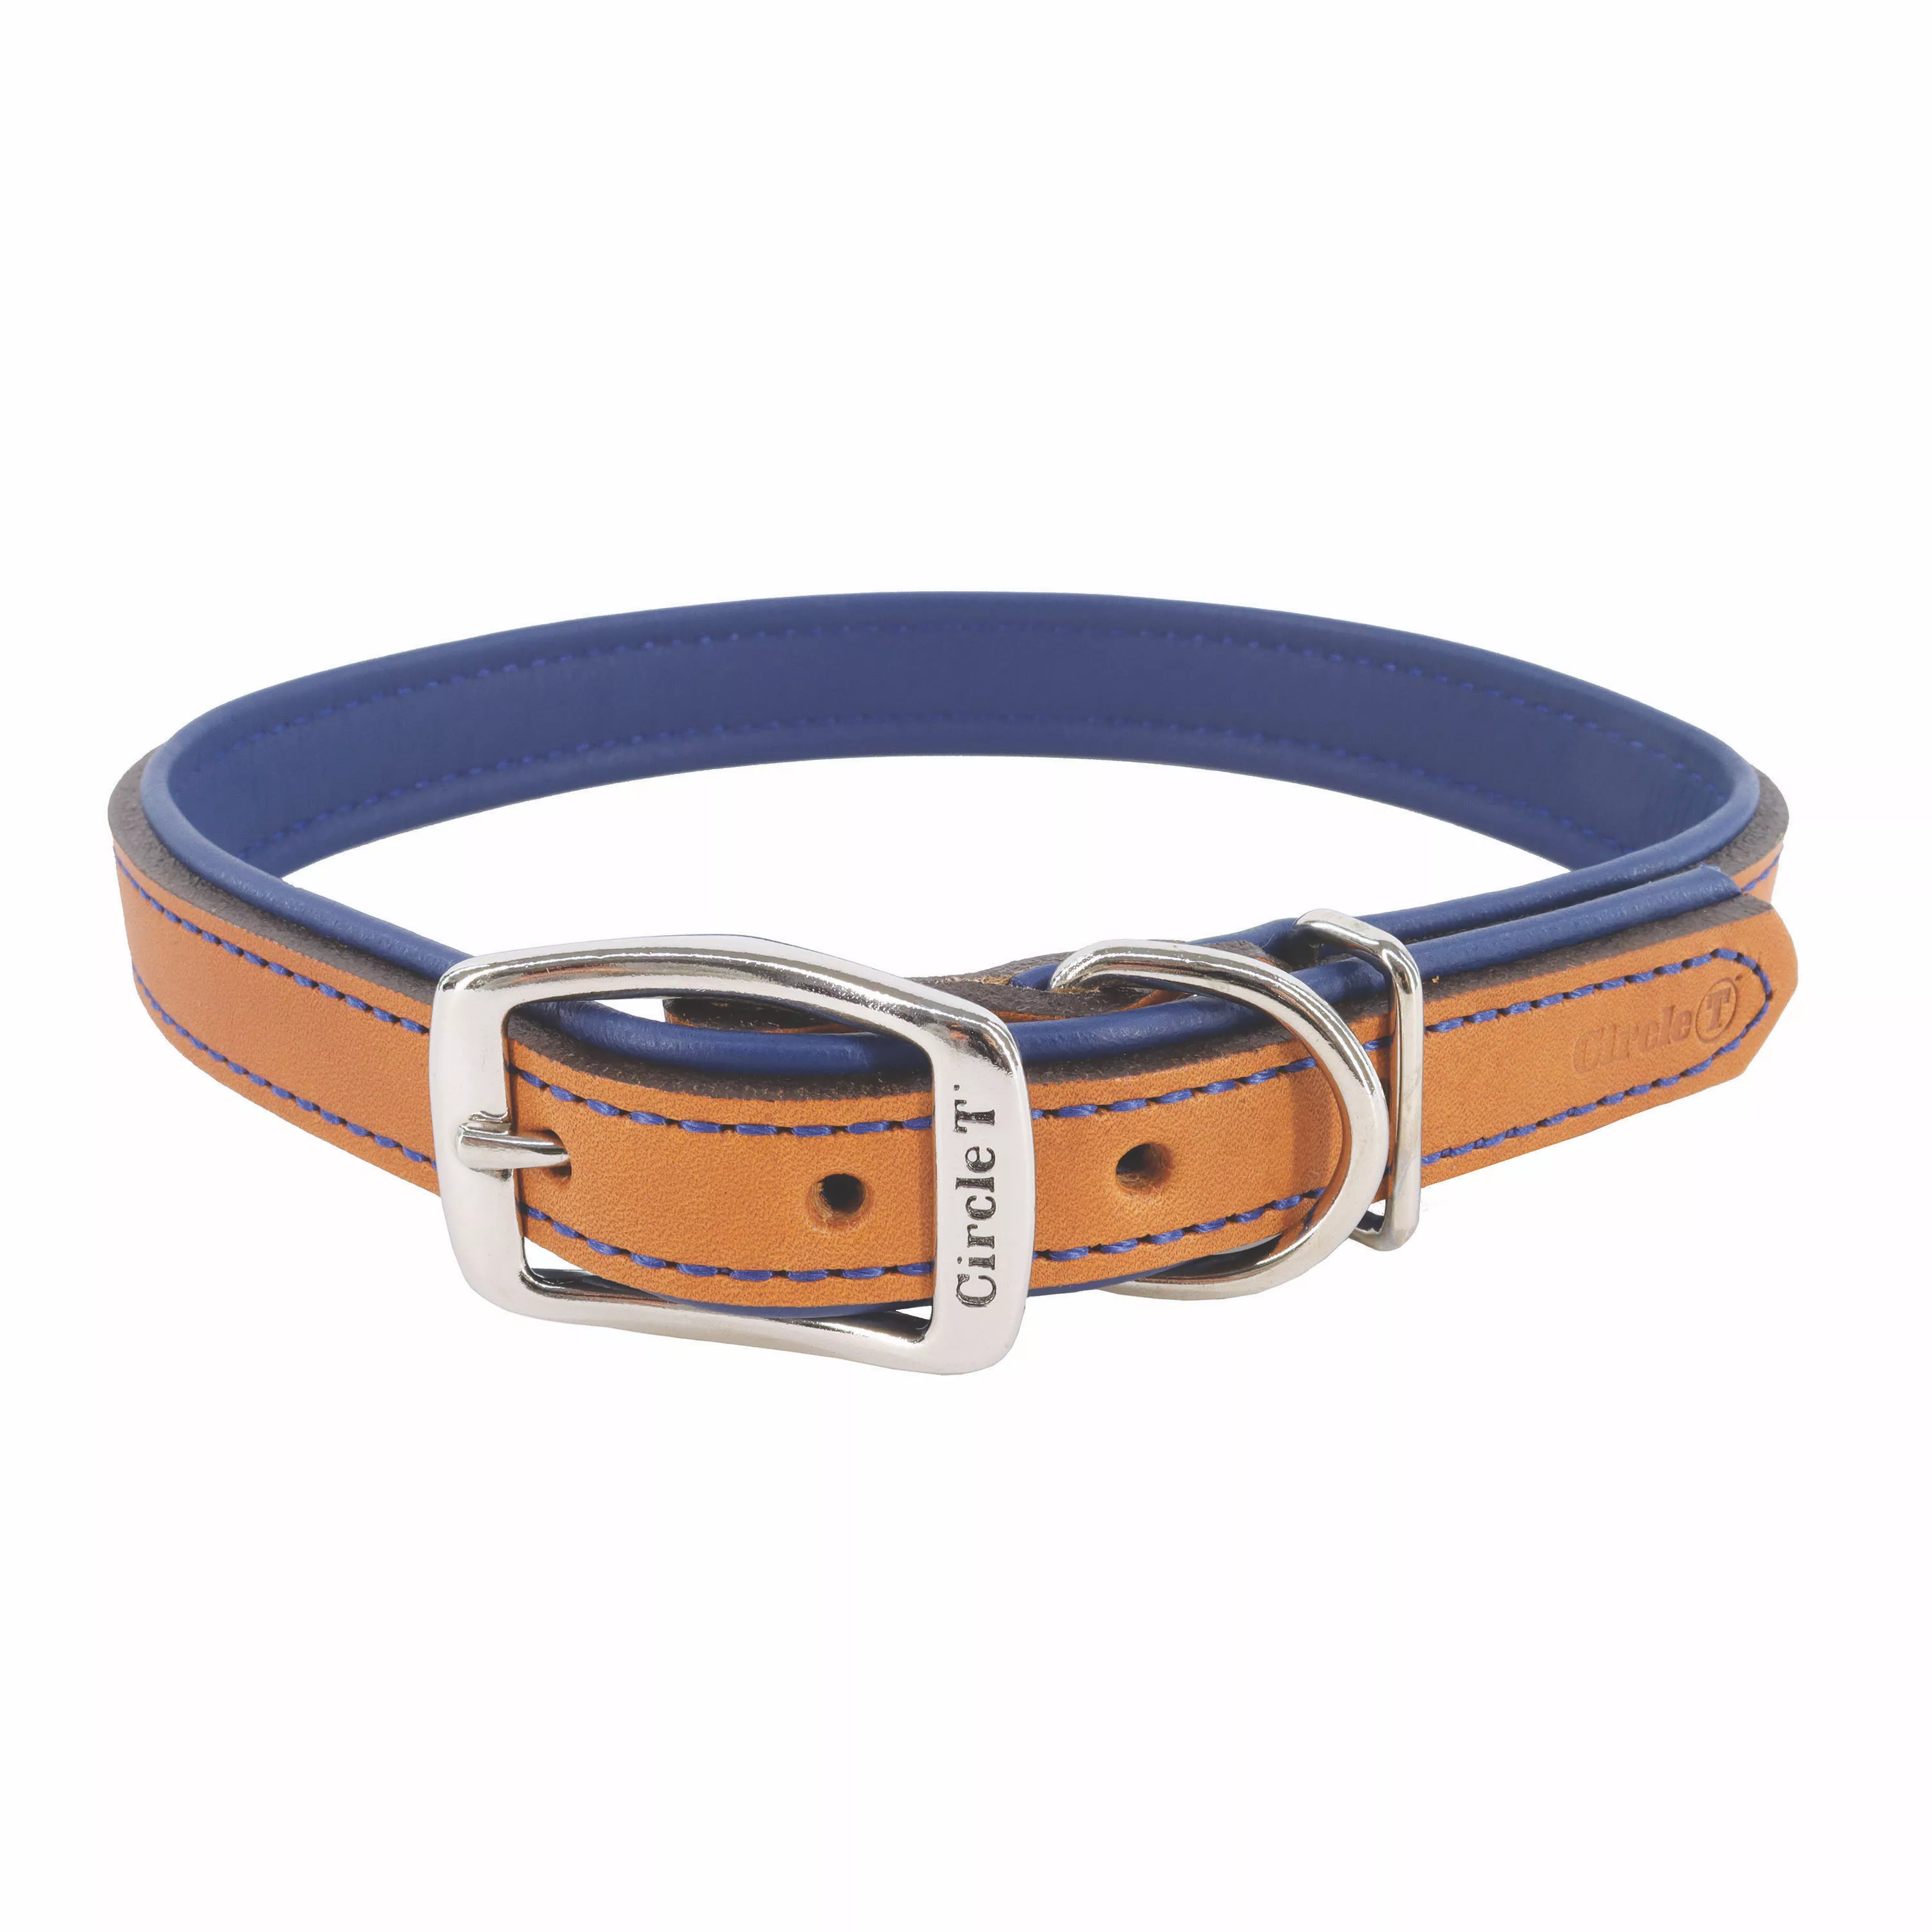 Circle T® Layered Fashion Leather Dog Collar